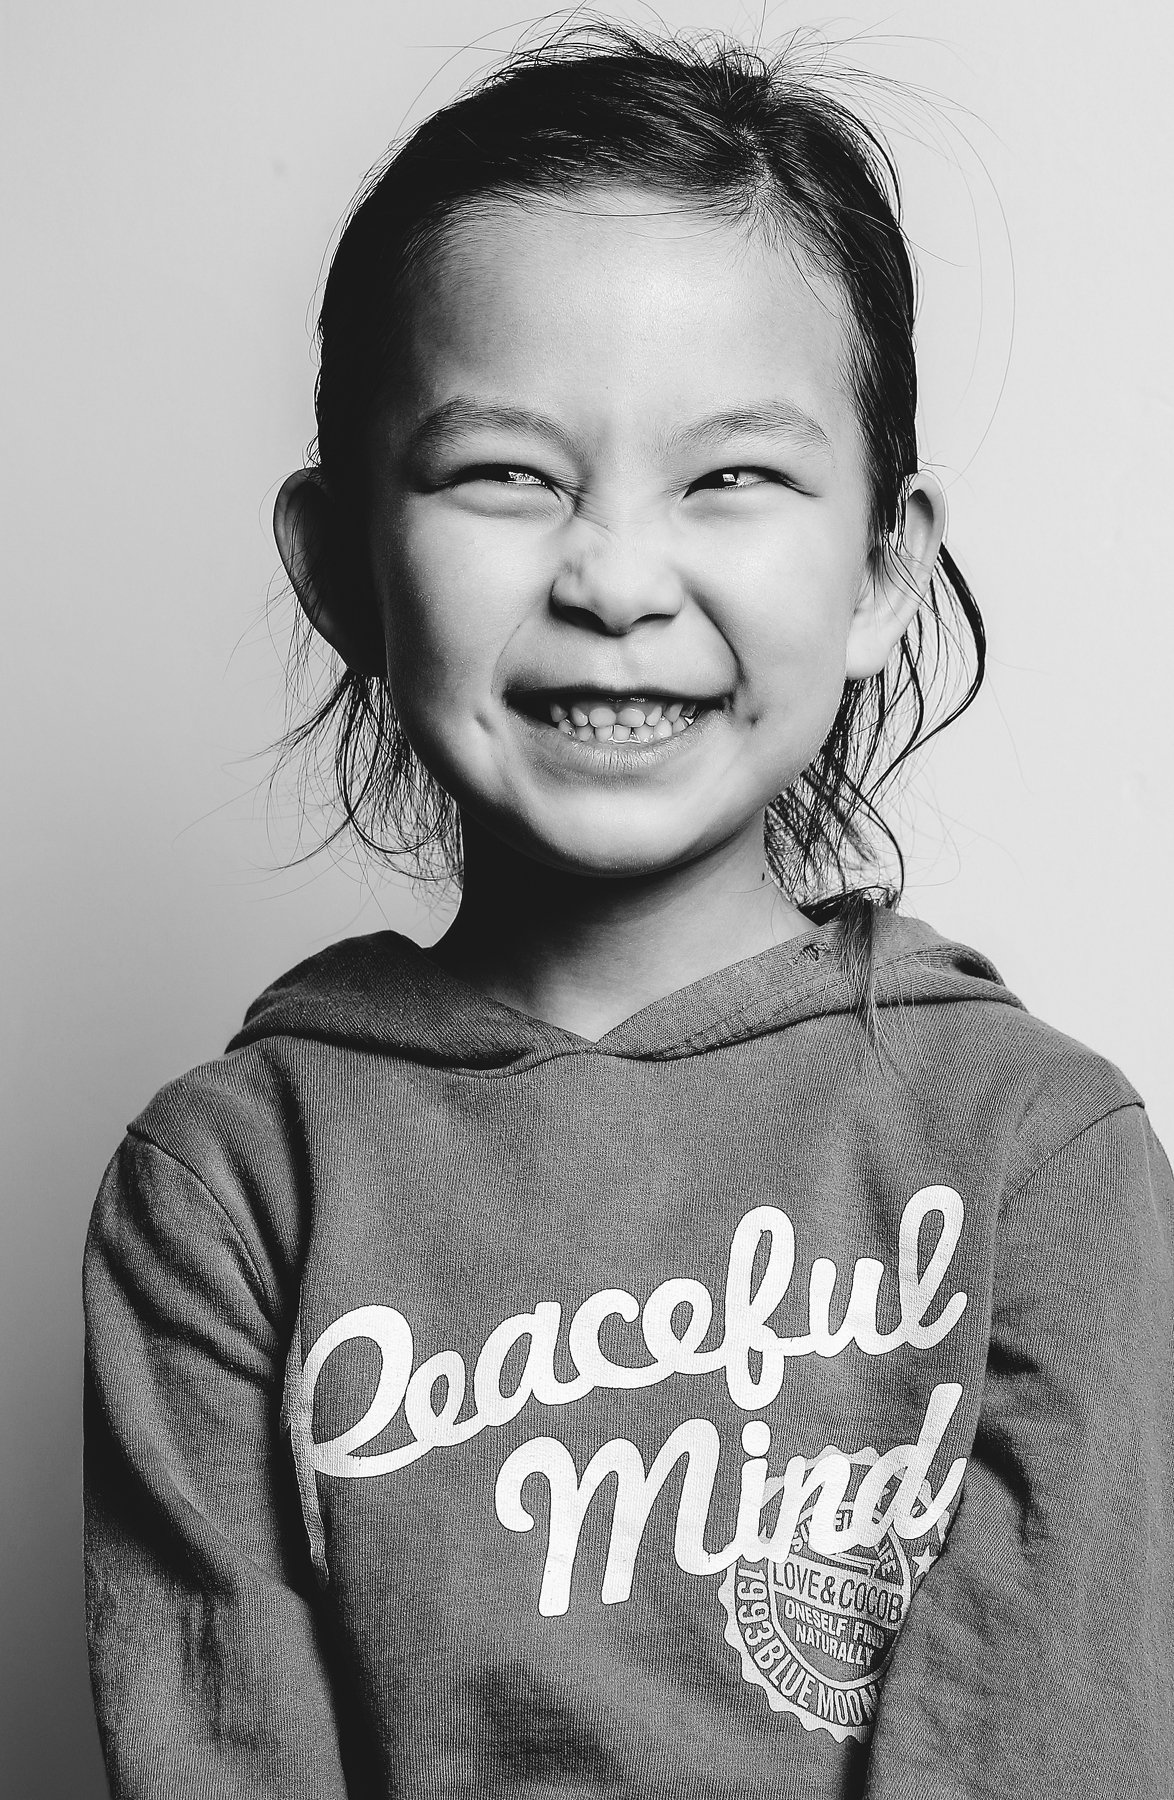 little girl smile, Peaceful, mongolia , Gansukh .S